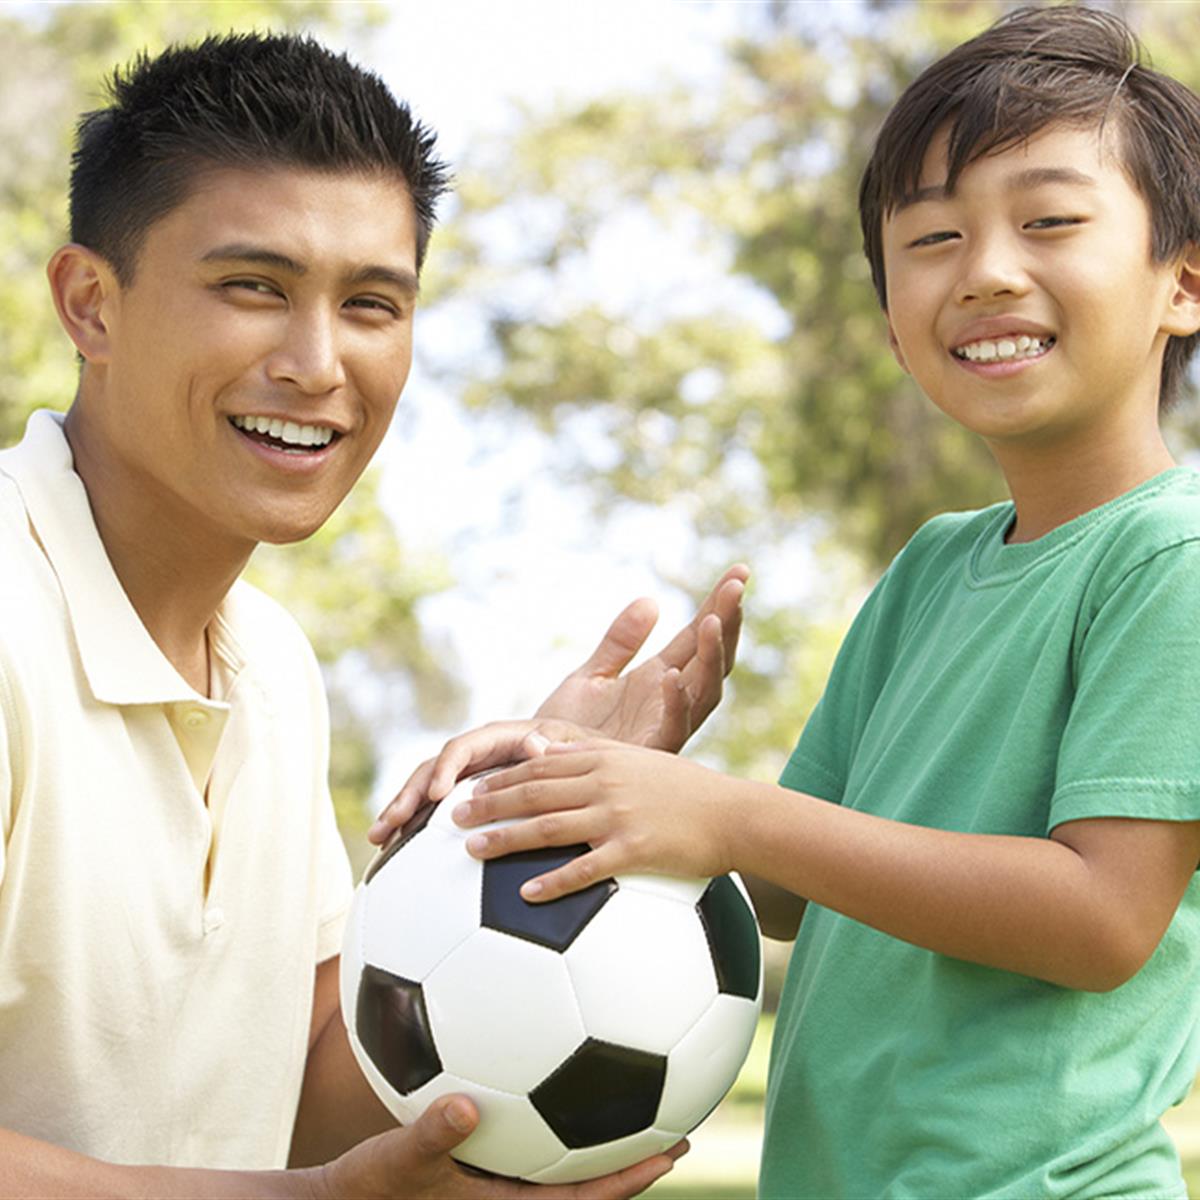 A qué edad comienzan los chicos a hacer deporte?